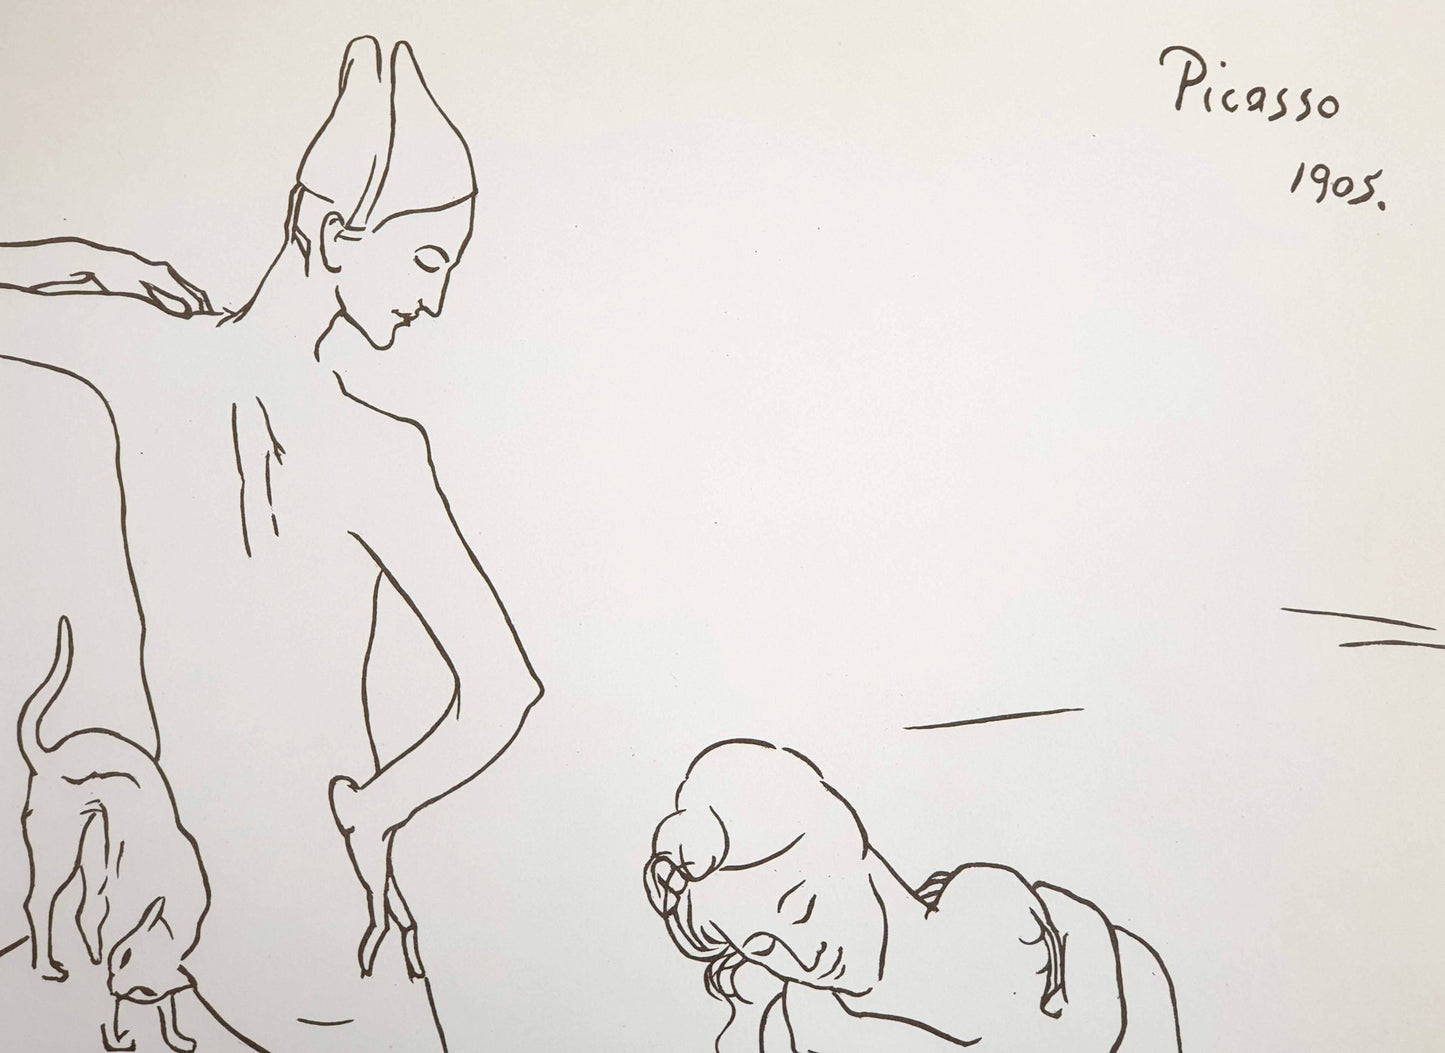 Pablo Picasso - Le Bain (1905)